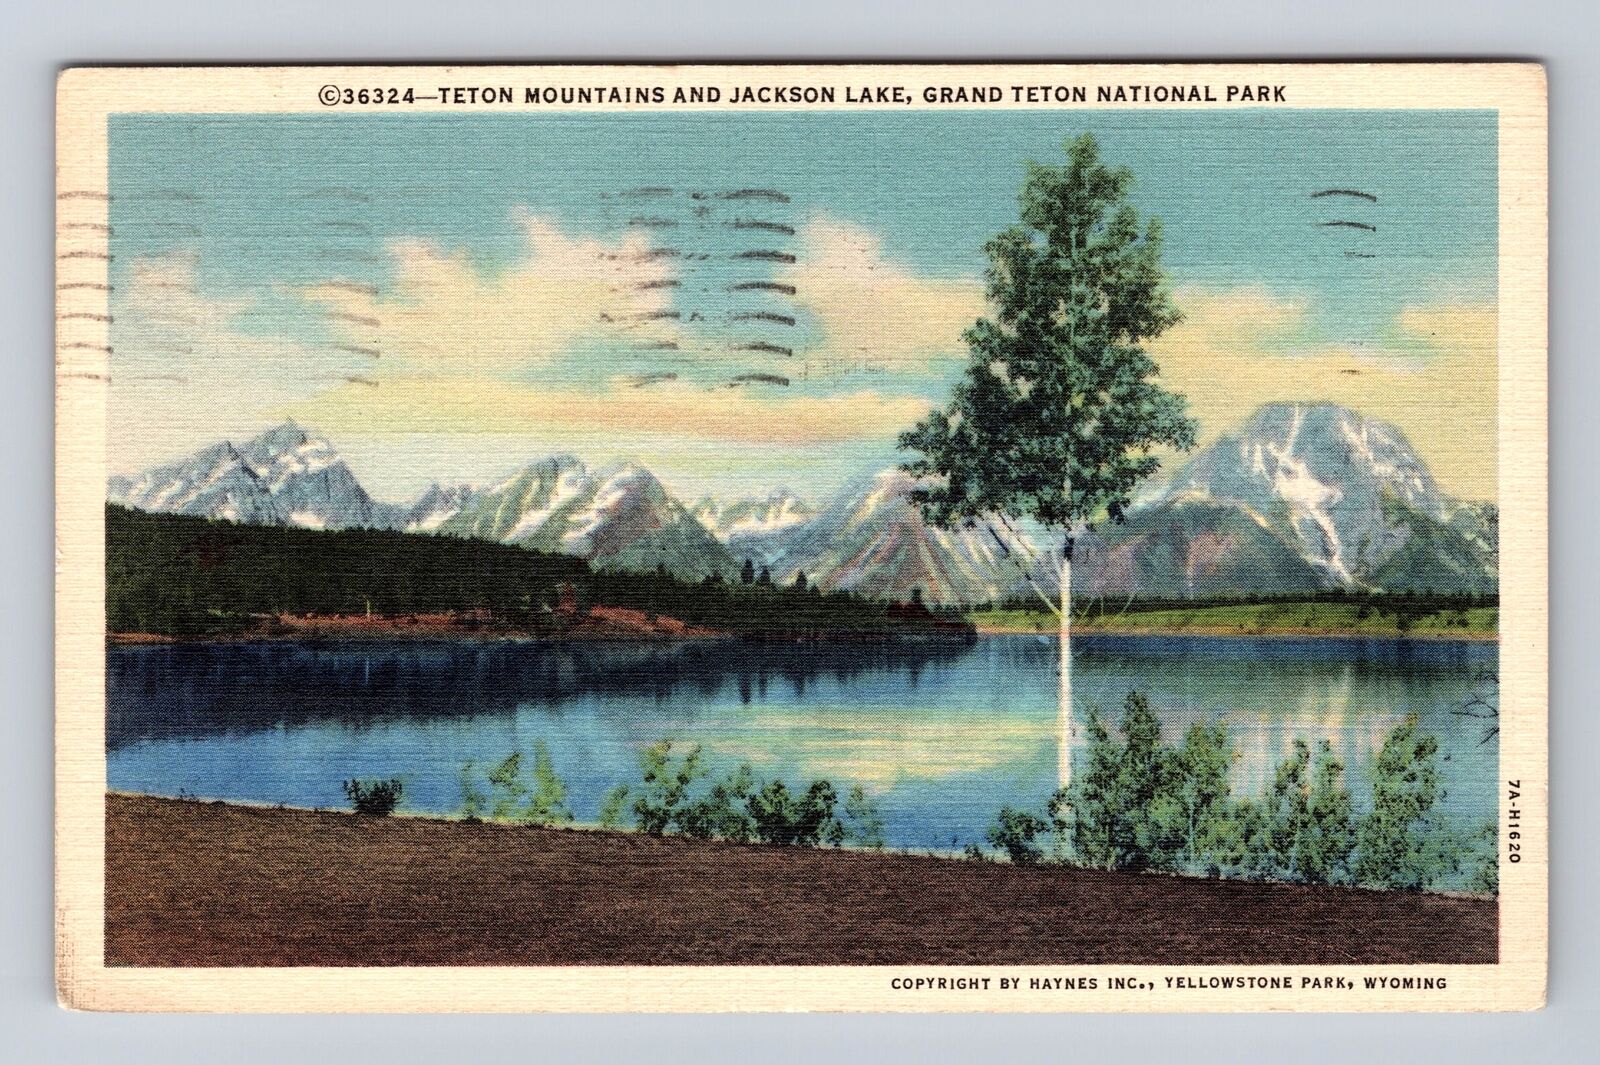 Grand Teton National Park, Teton Mountains, Series #36324 Vintage c1940 Postcard